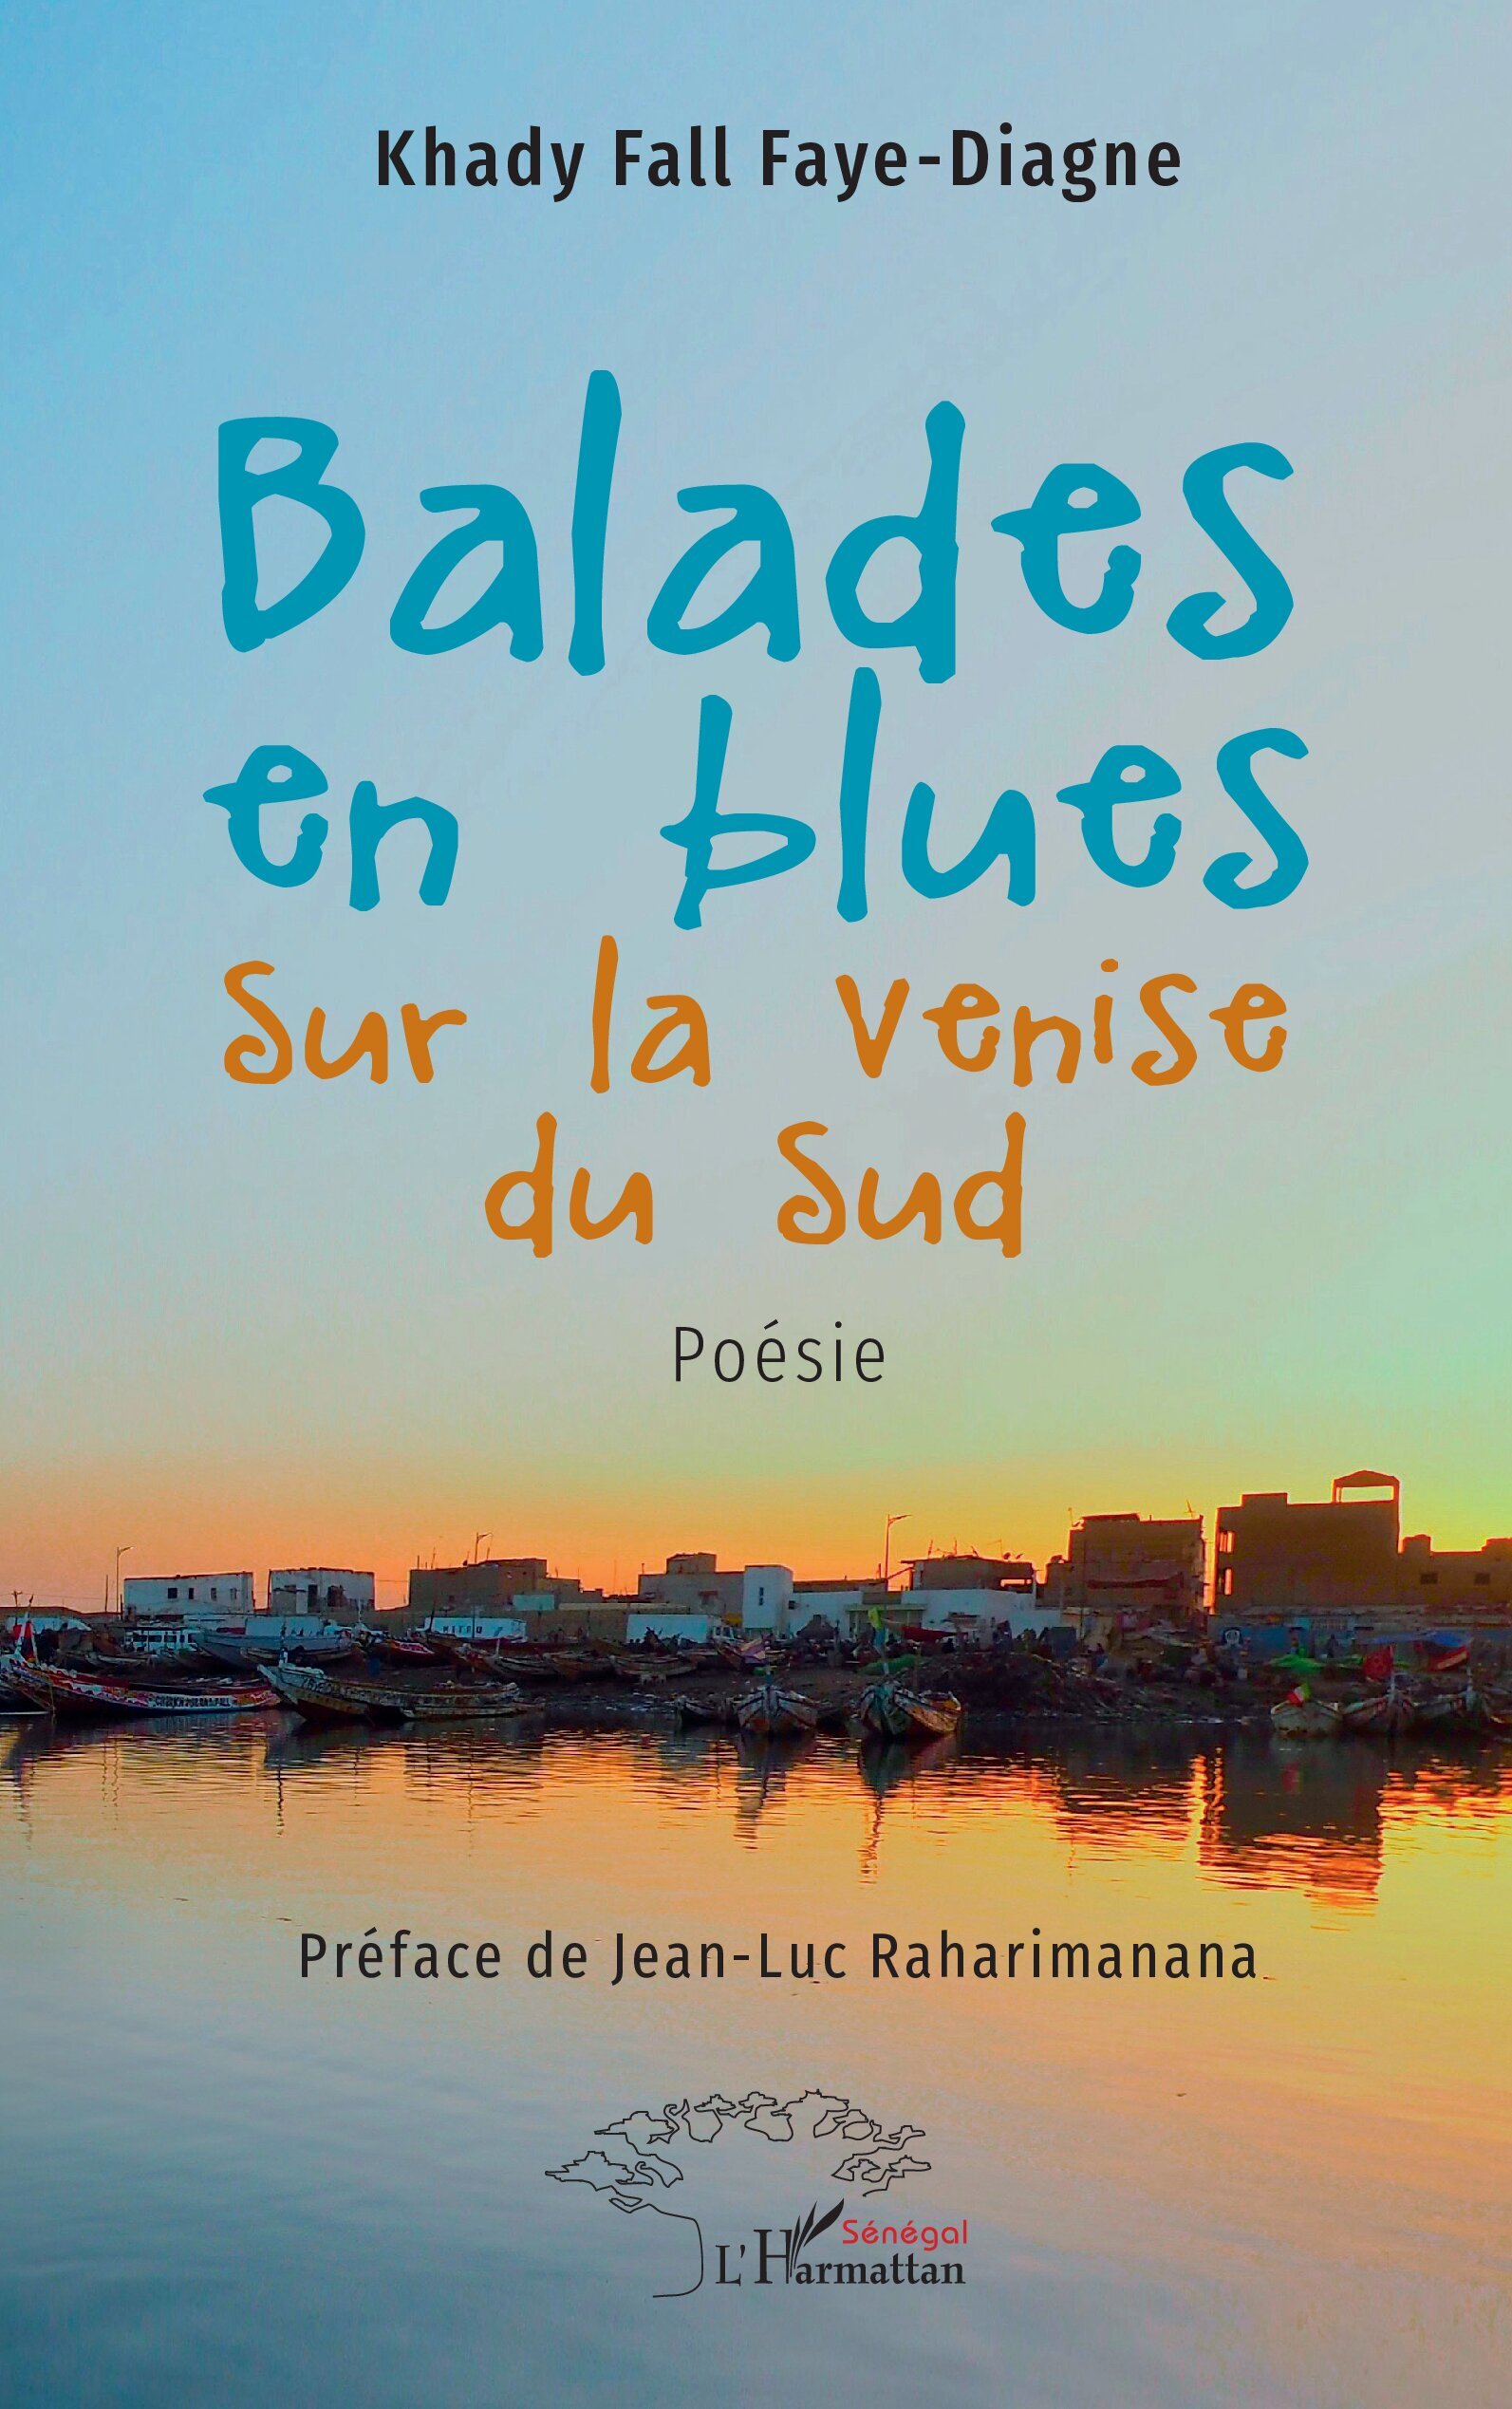 Balades en blues sur la Venise du Sud (9782336423289-front-cover)